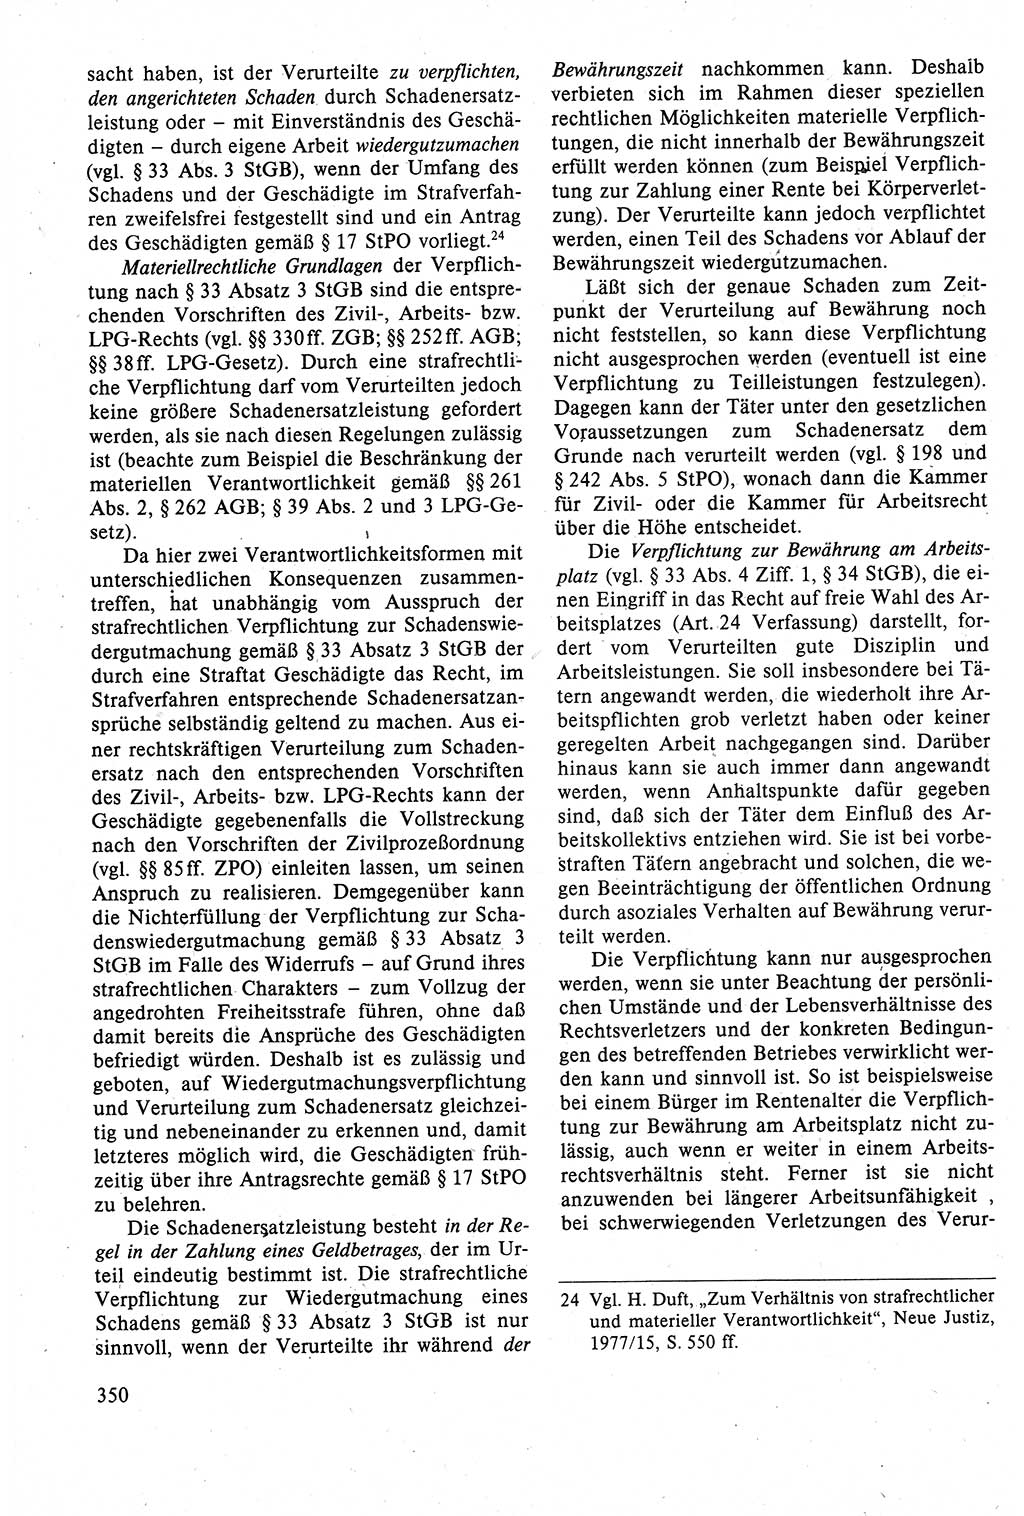 Strafrecht der DDR (Deutsche Demokratische Republik), Lehrbuch 1988, Seite 350 (Strafr. DDR Lb. 1988, S. 350)